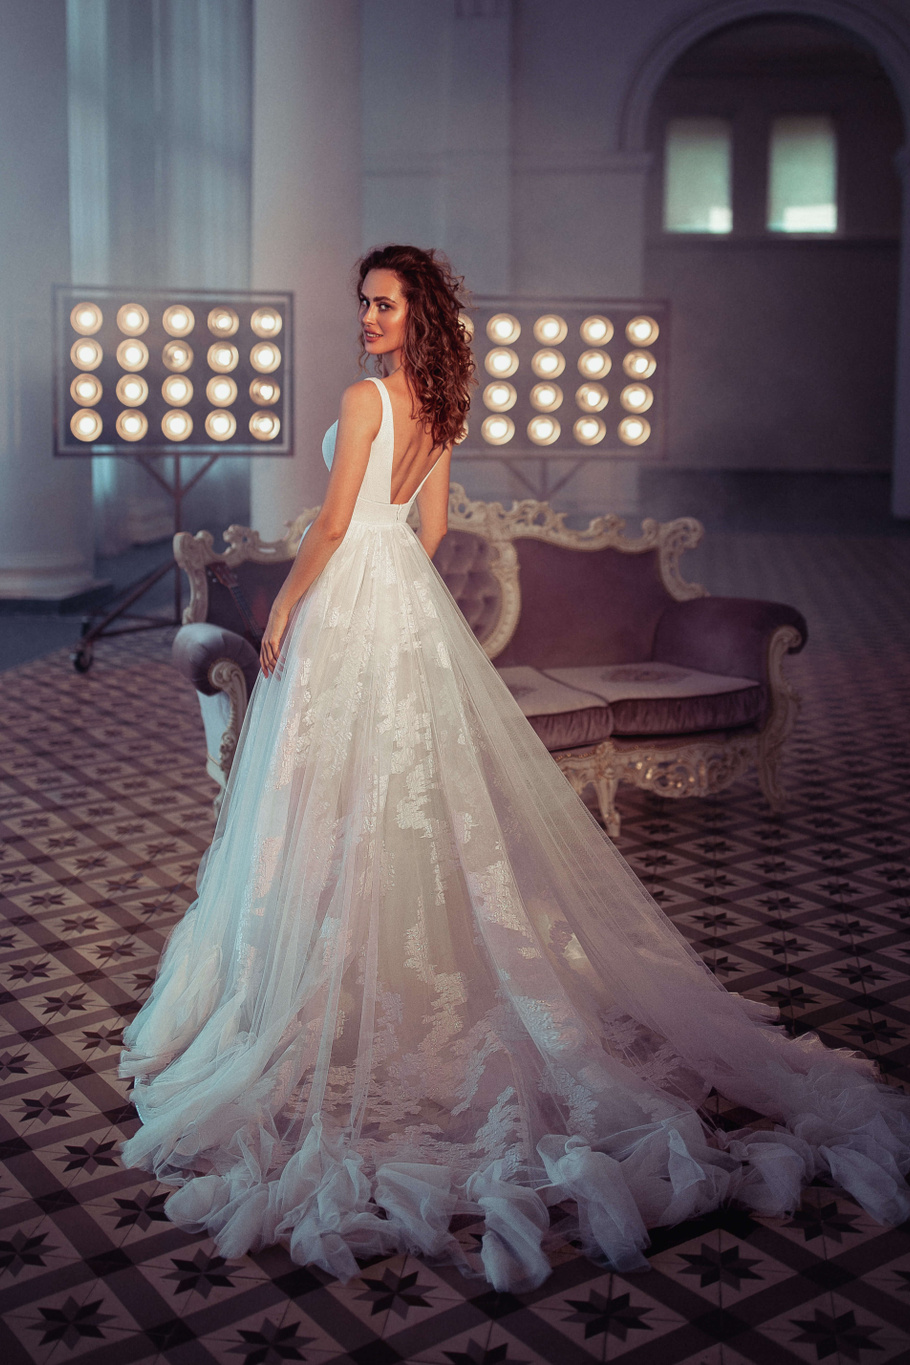 Купить свадебное платье «Лесандра» Бламмо Биамо из коллекции Свит Лайф 2021 года в Санкт-Петербурге